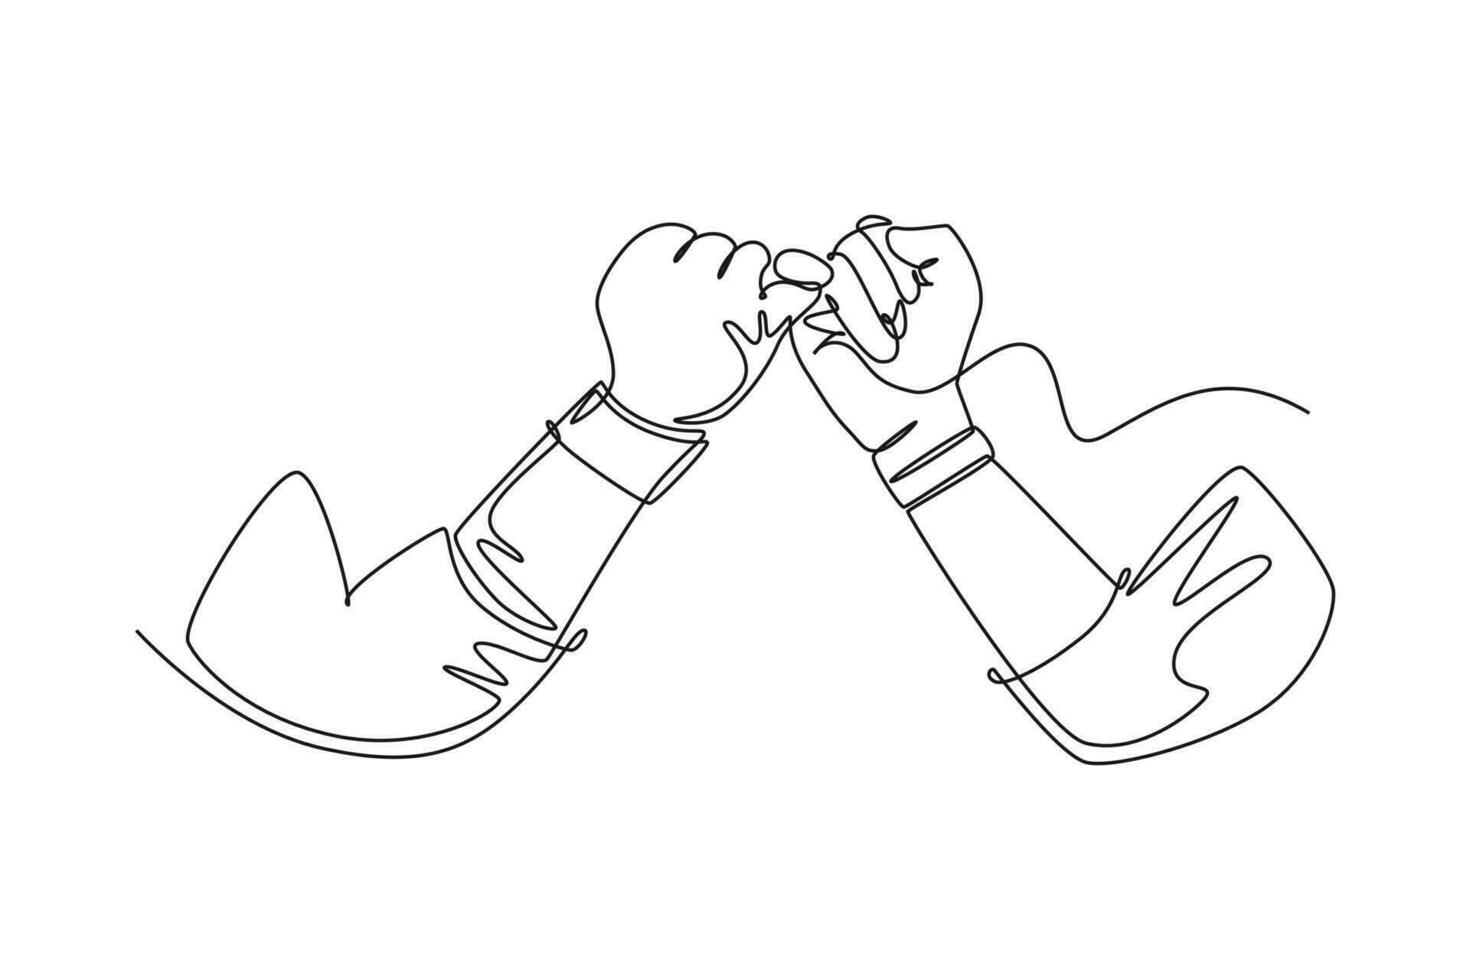 Single kontinuierlich Linie Zeichnung zwei Hände Haken jeder andere ihr wenig Finger. Freundschaft Bindung mit zwei Menschen im Harmonie. versprechen oder Frieden Konzept. dynamisch einer Linie Grafik Design Vektor Illustration